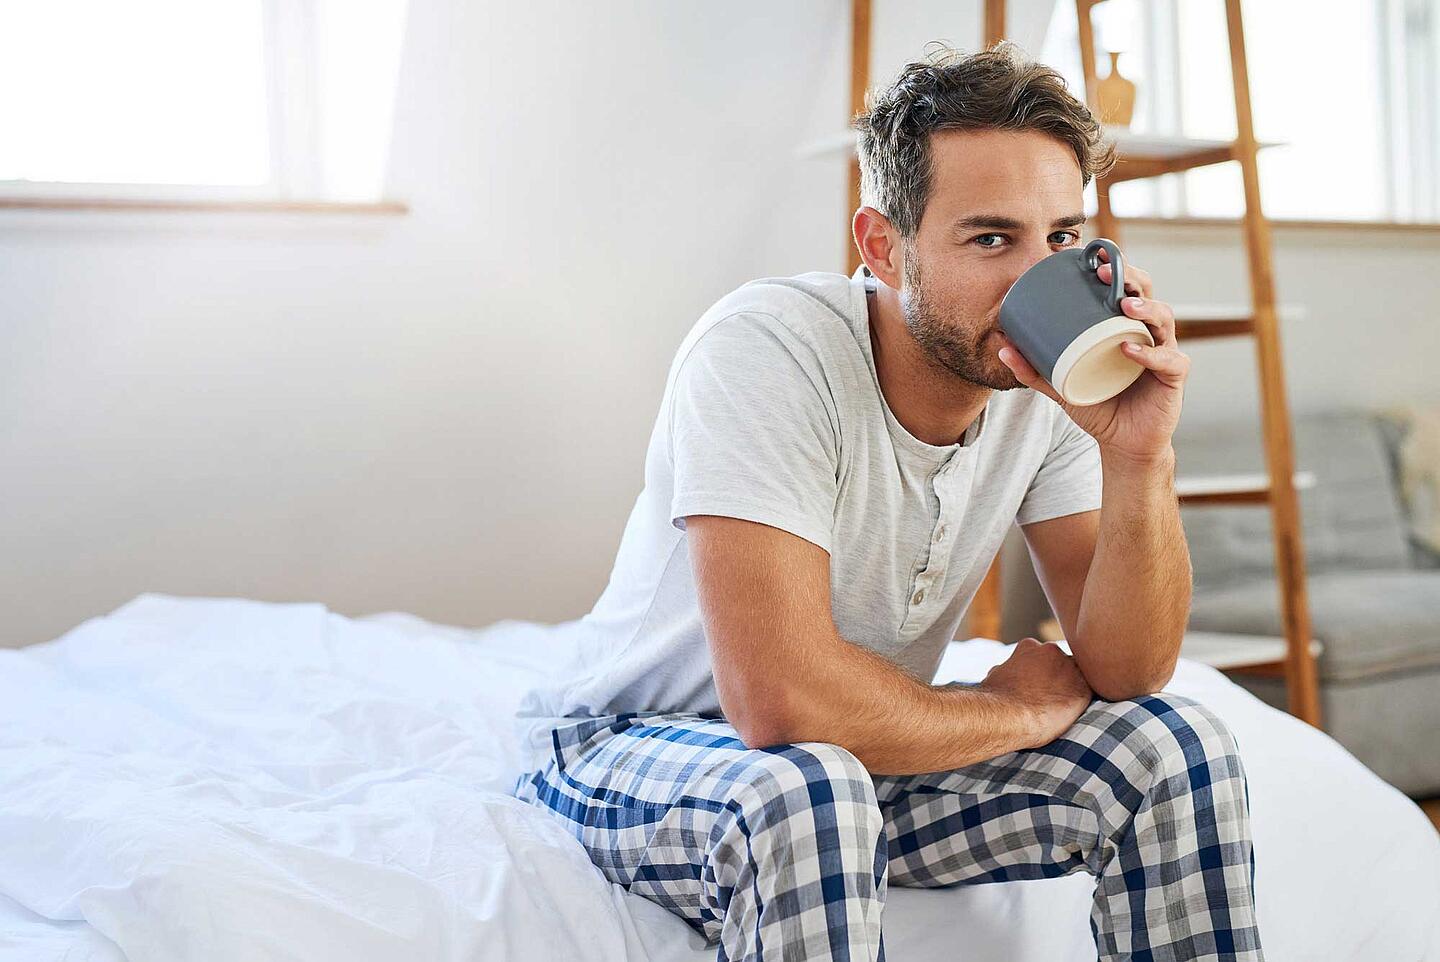 Mann sitzt müde auf der Bettkante und trinkt Kaffee.